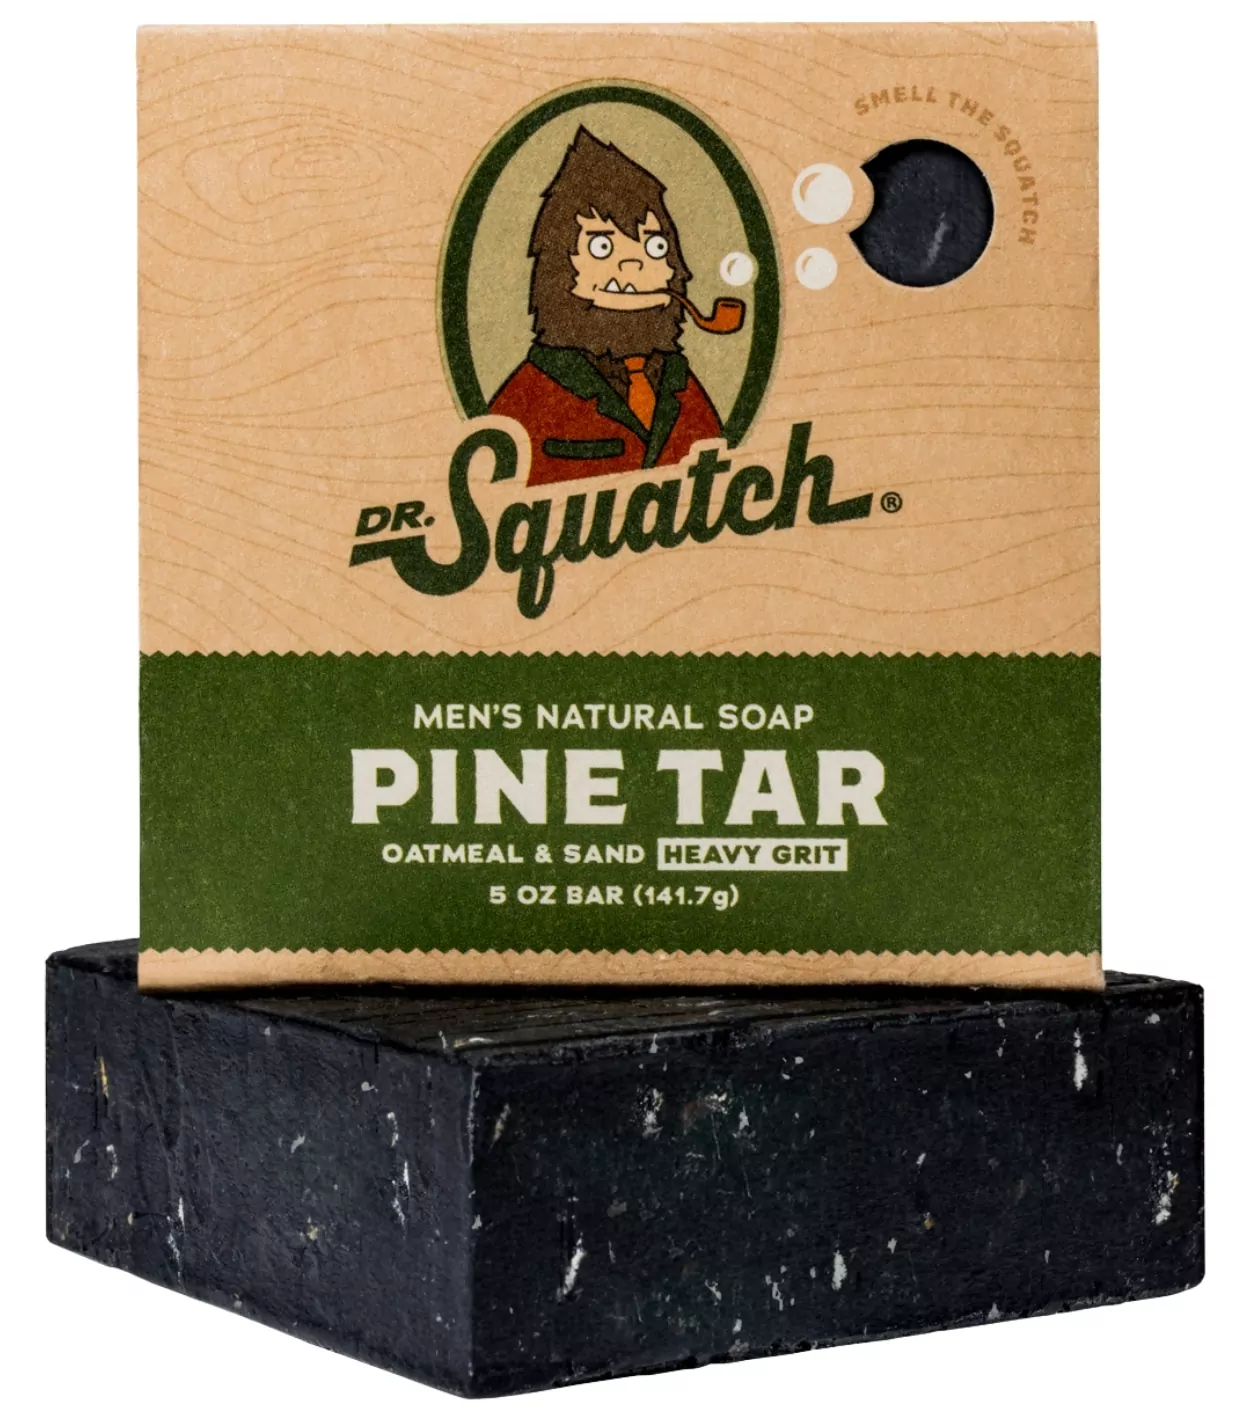 Dr. Squatch Cologne Review  Make Pine Tar Soap Scent Last Longer 